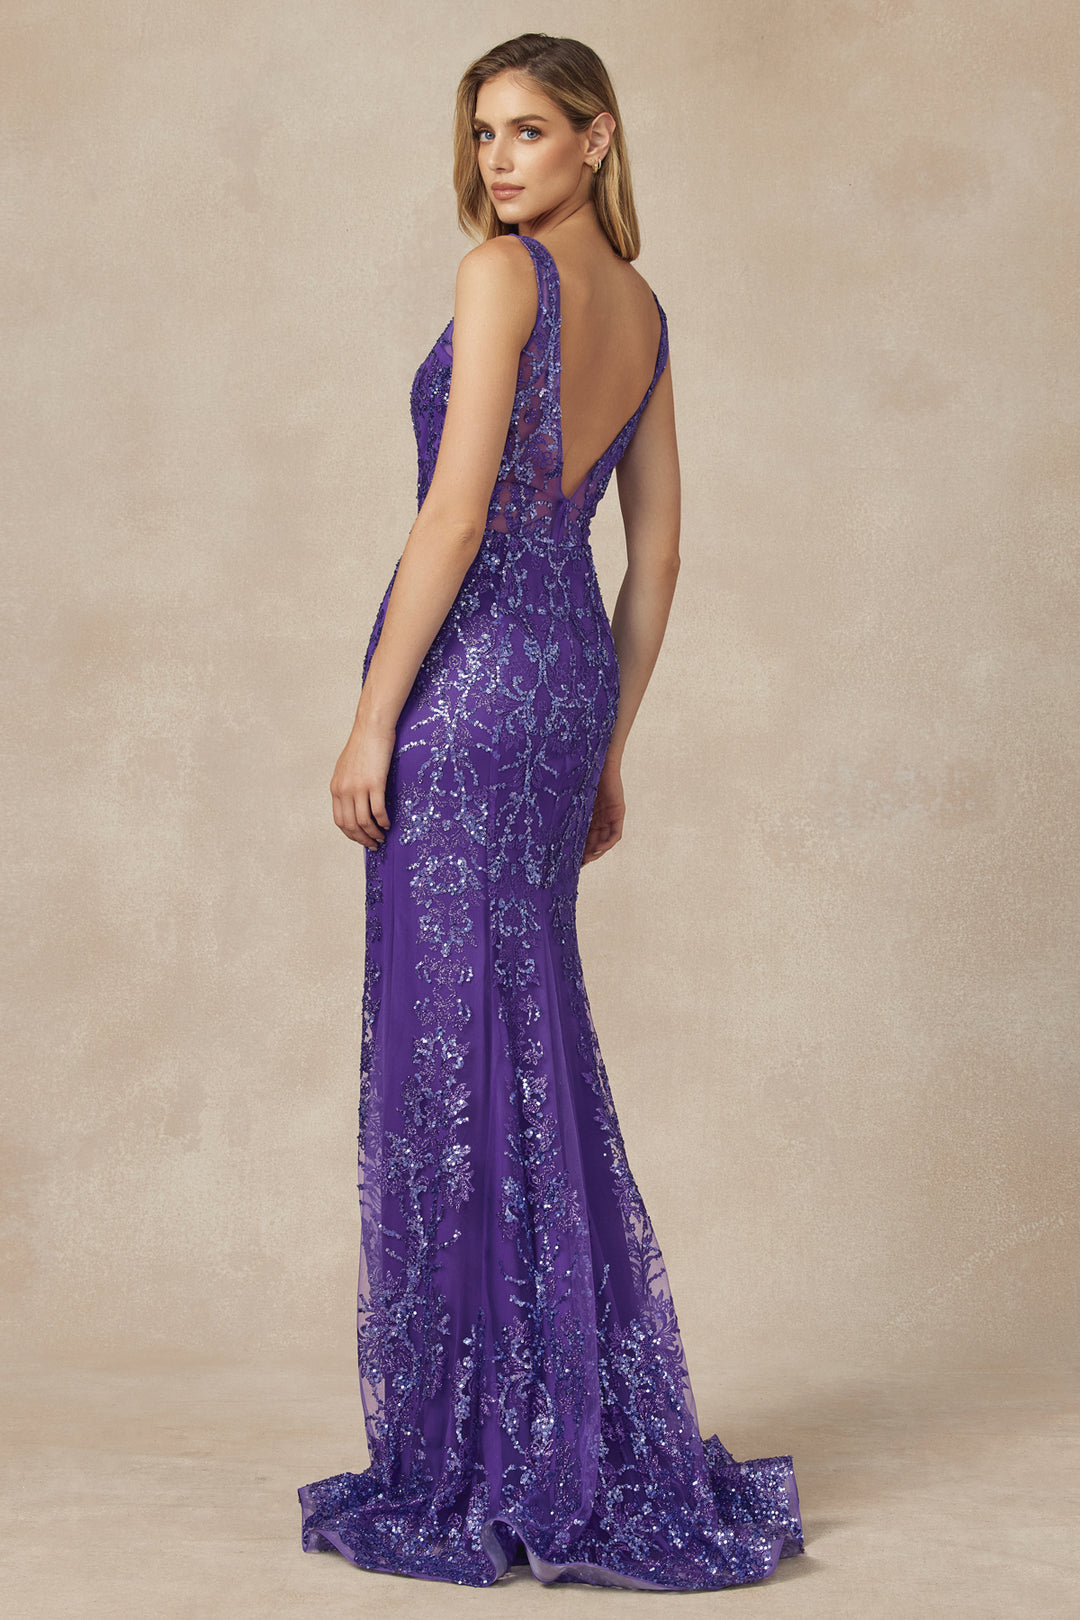 JULIET 277 Fancy Glitter Design Tulle Mermaid Evening Dress